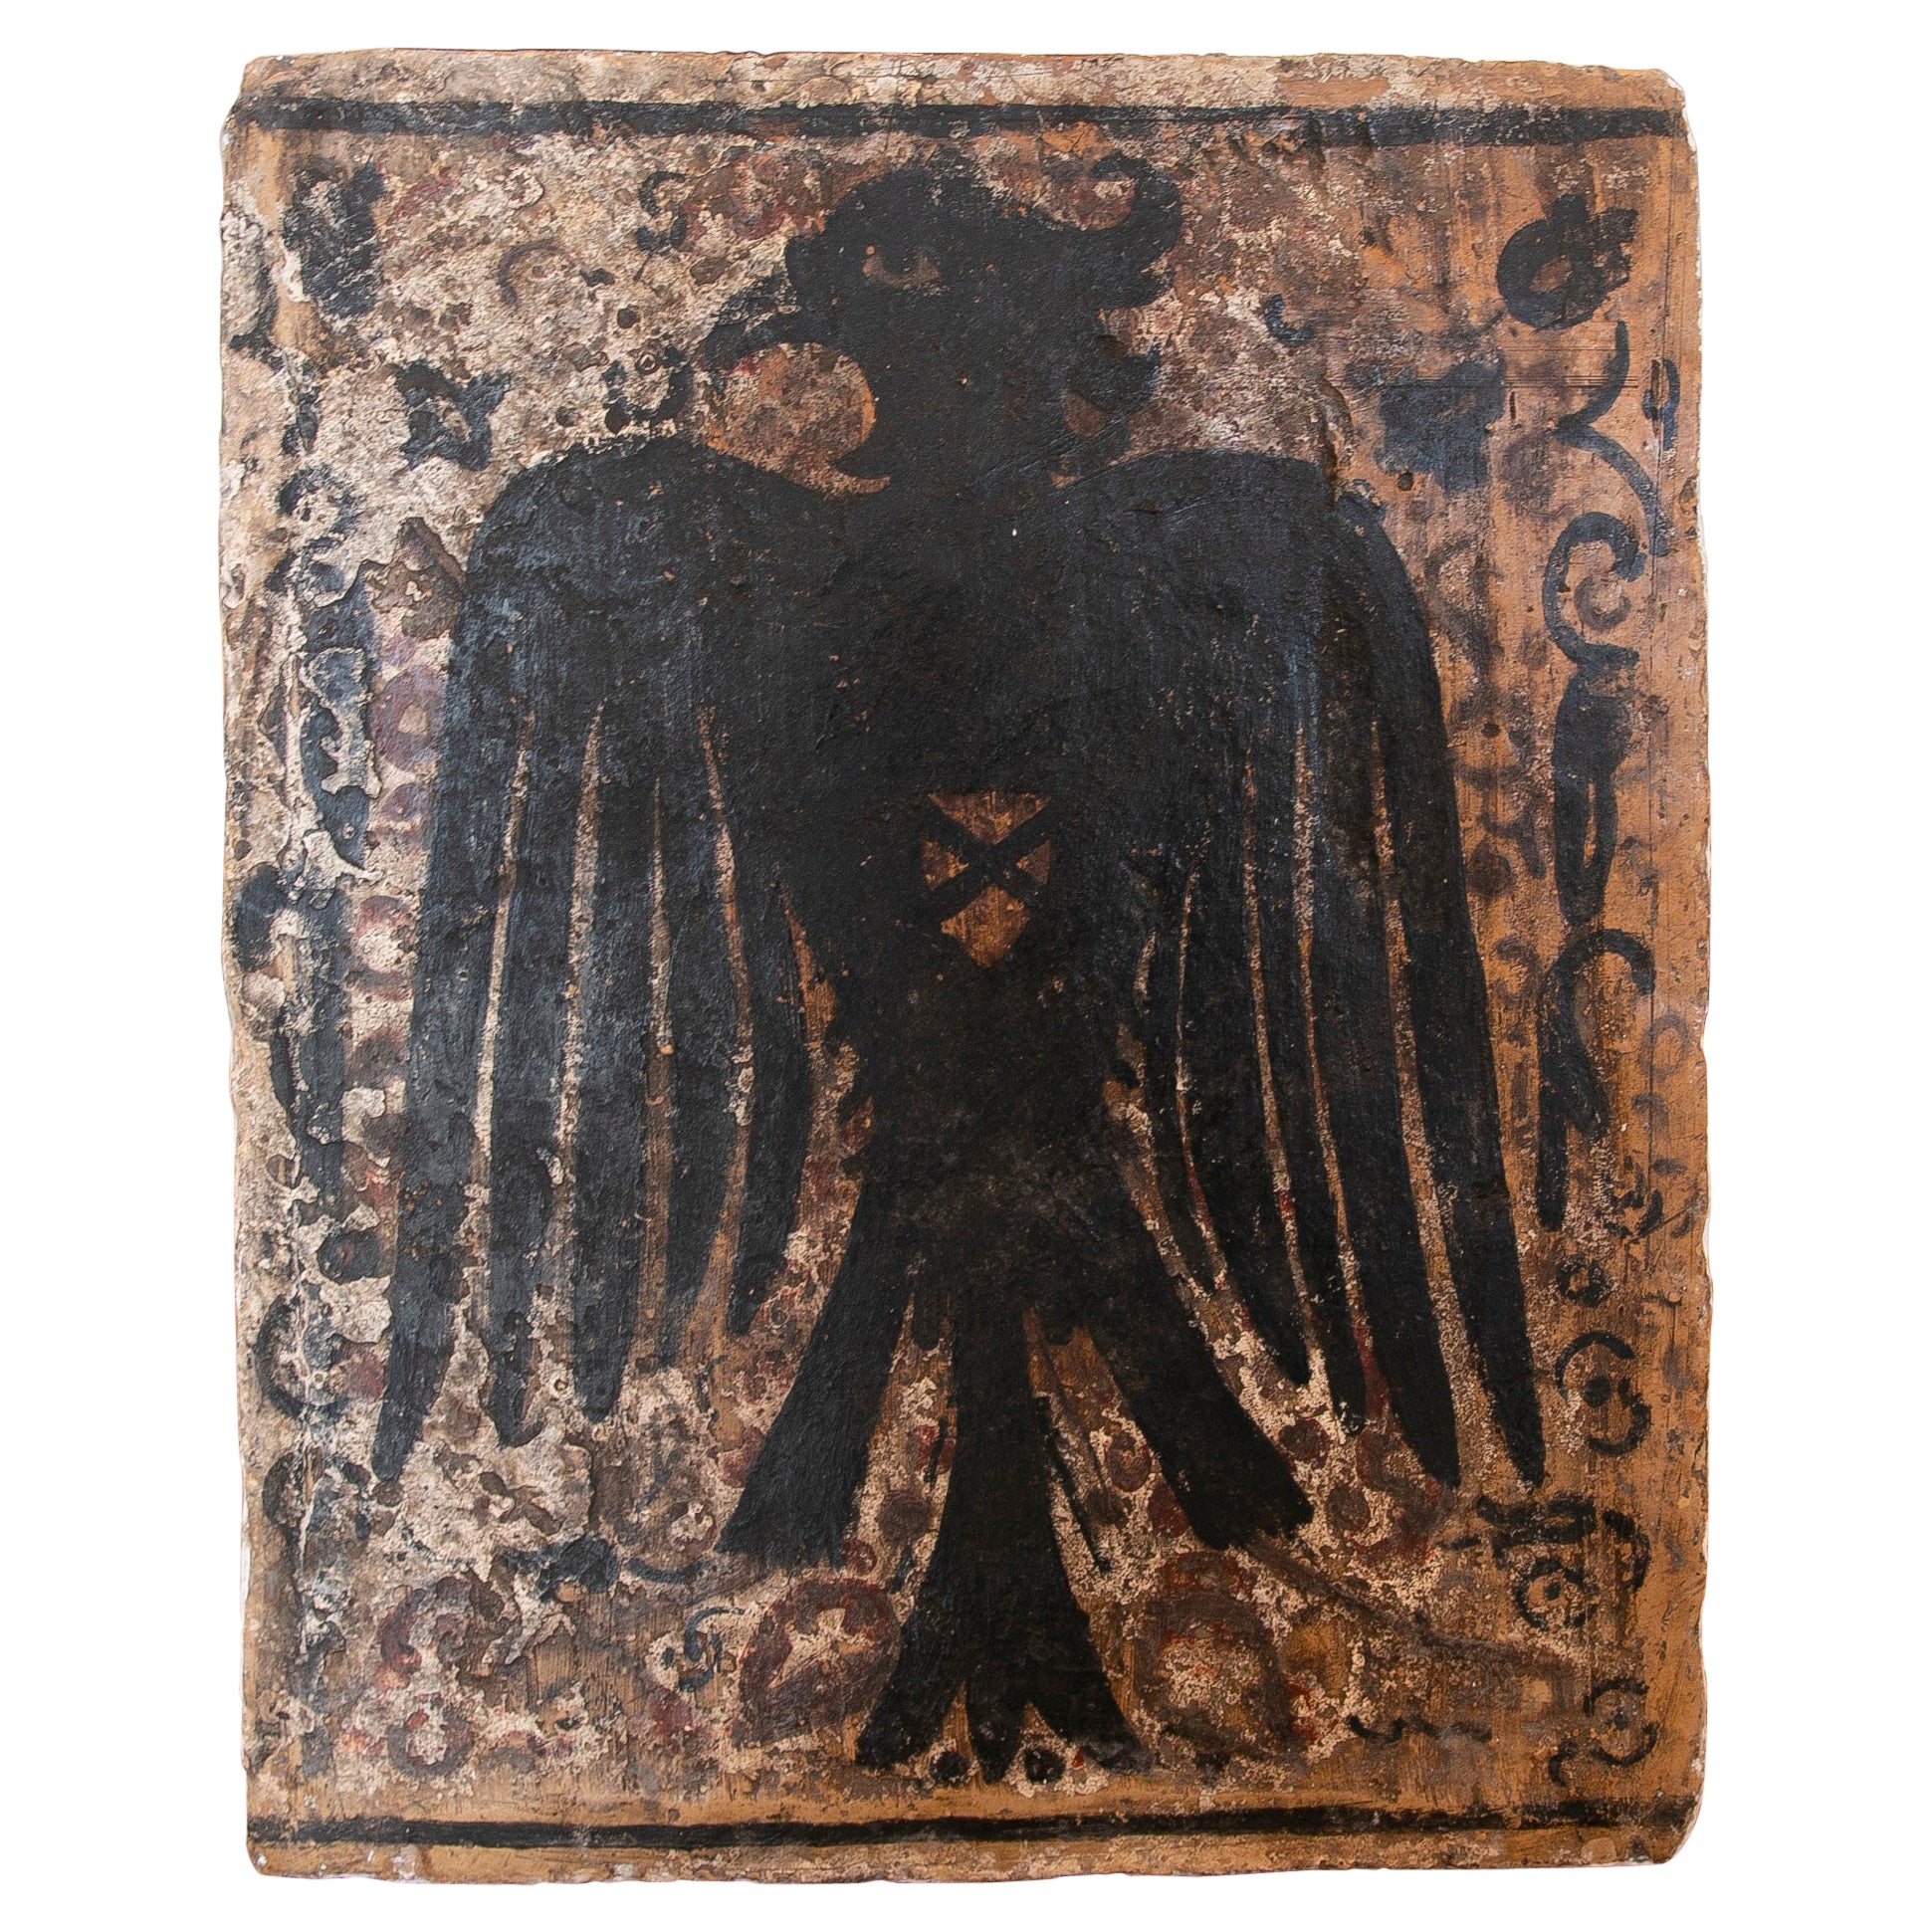 Spanische Terrakotta-Kachel „Socarrat“ eines Adlers aus dem 19. Jahrhundert